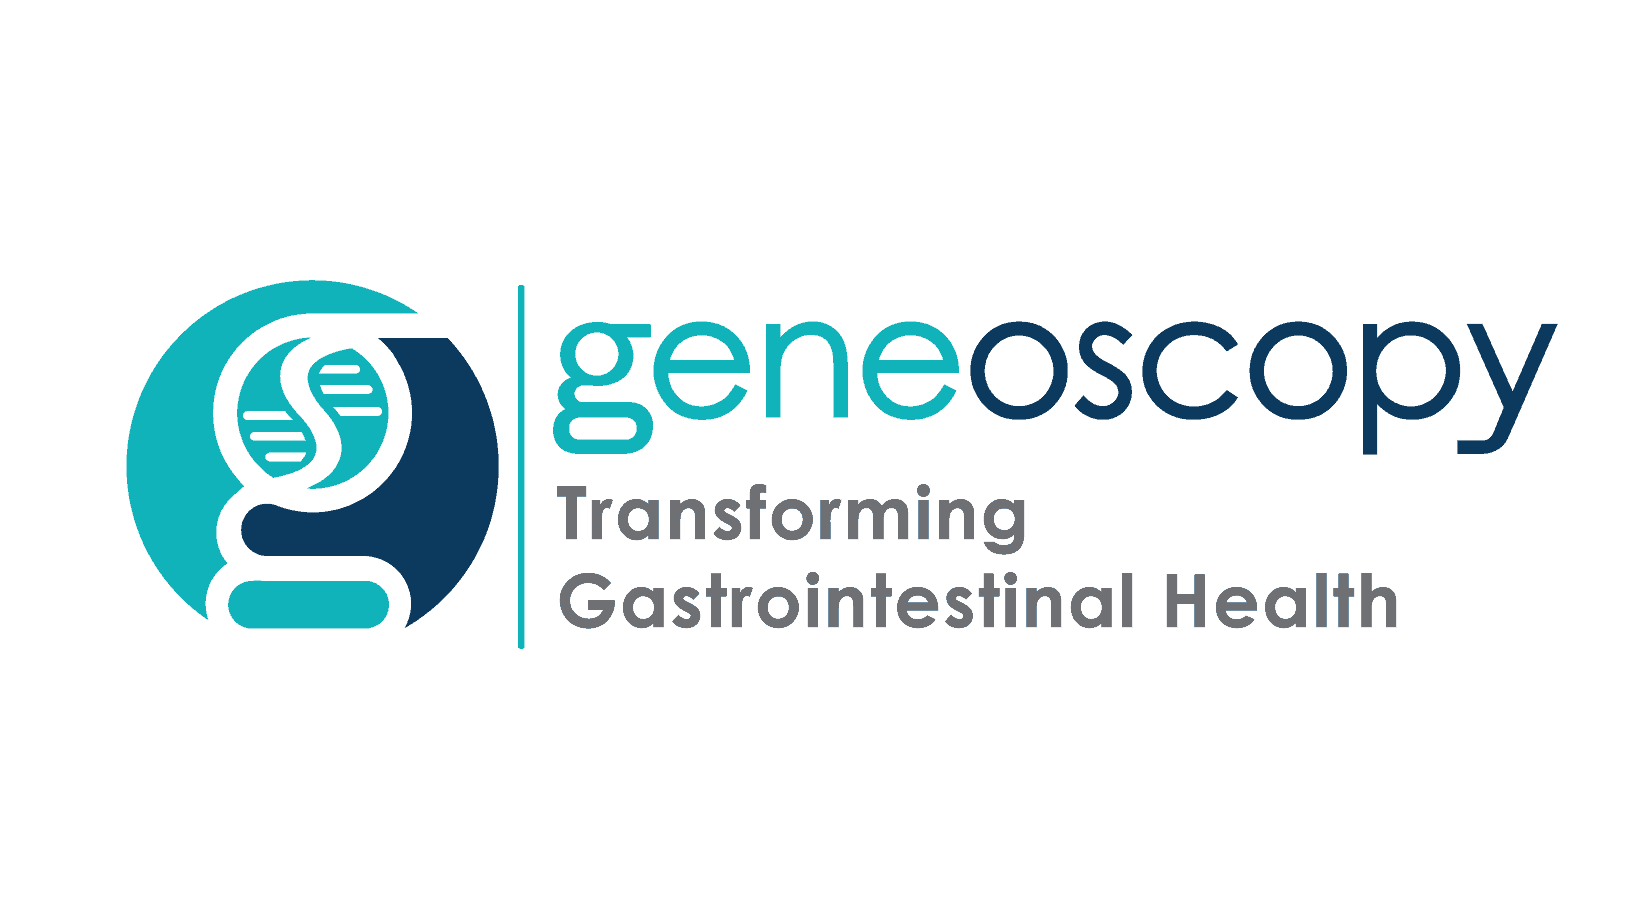 geneoscopy logo on white background